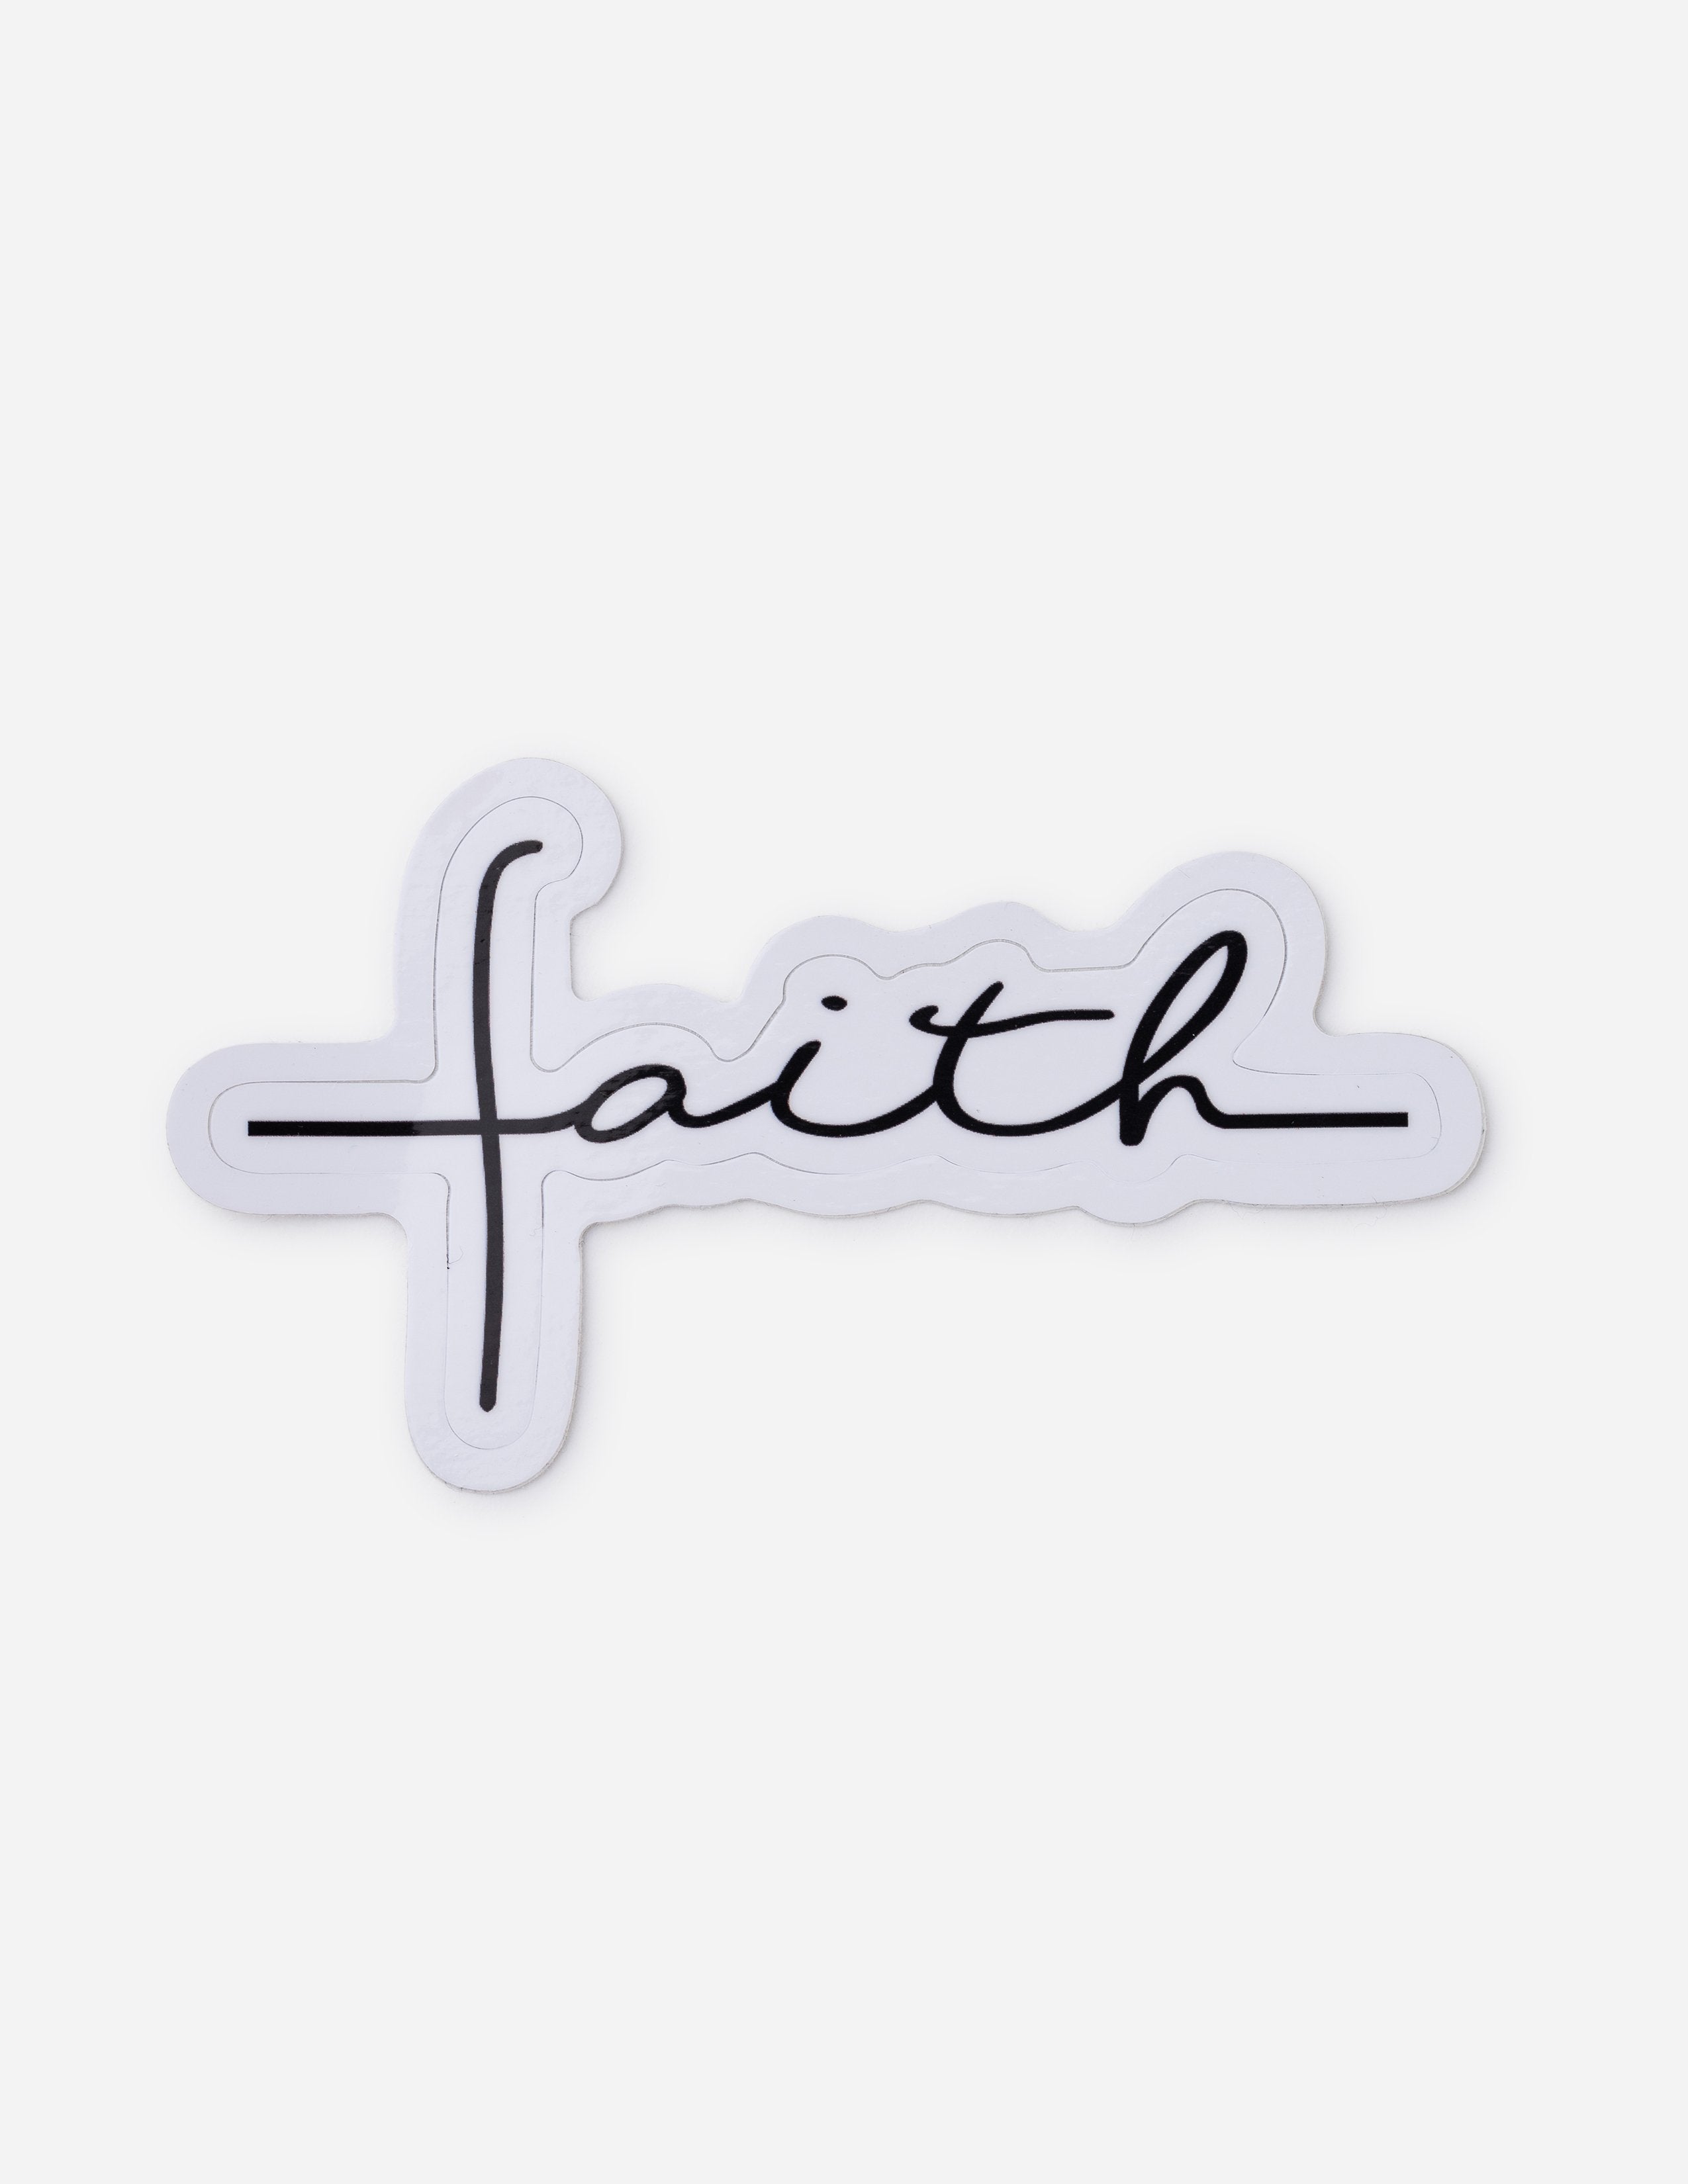 Got Faith - Bold Text - Sticker